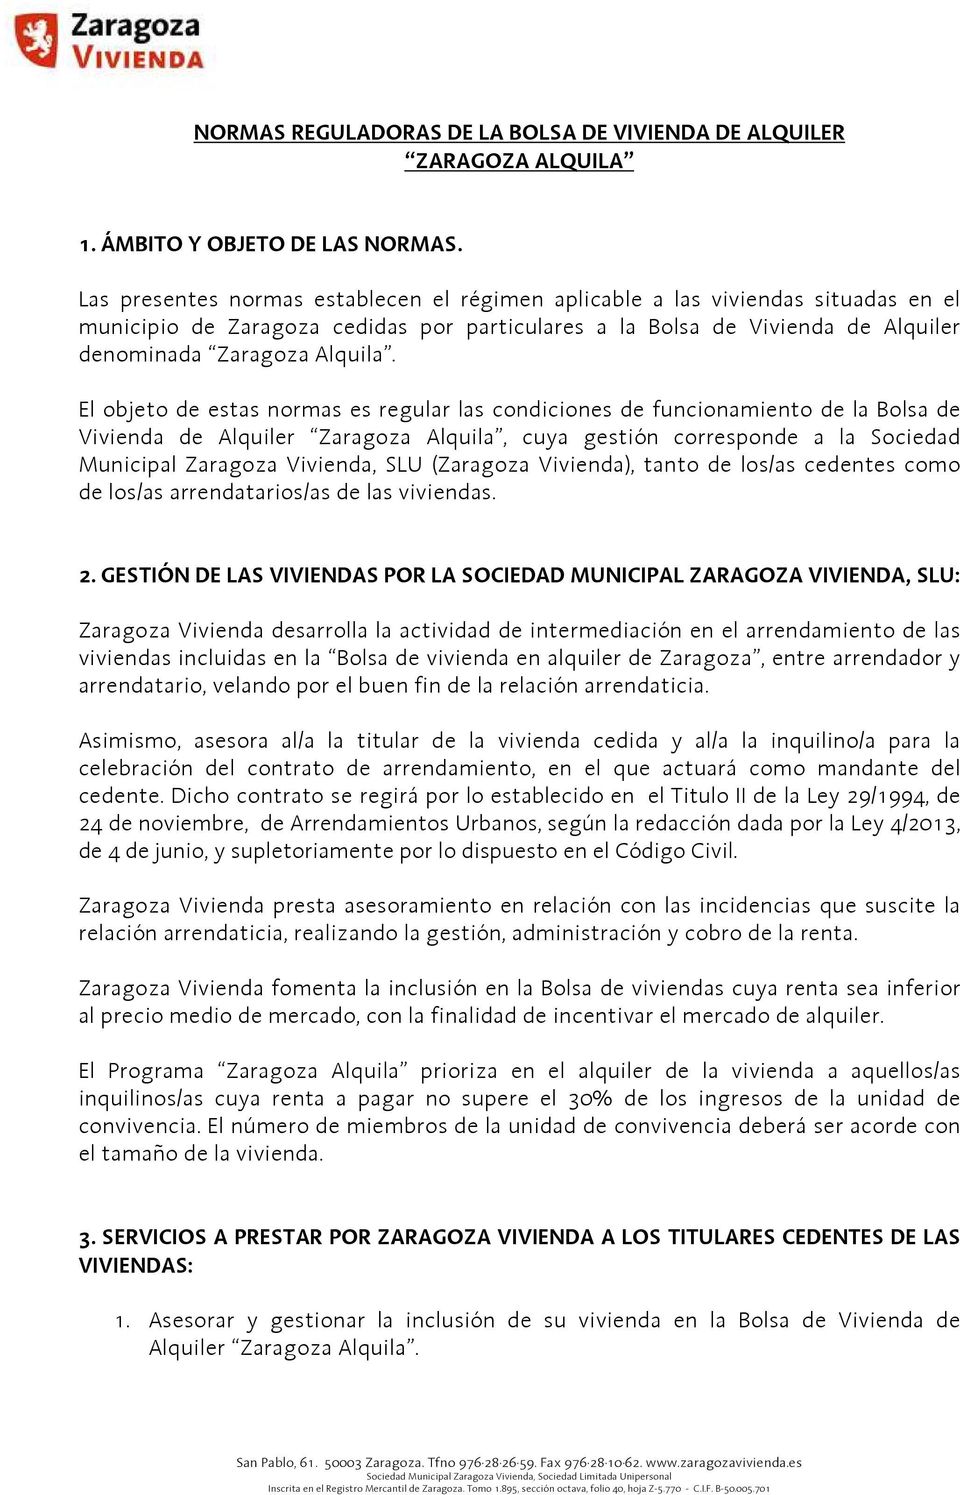 El objeto de estas normas es regular las condiciones de funcionamiento de la Bolsa de Vivienda de Alquiler Zaragoza Alquila, cuya gestión corresponde a la Sociedad Municipal Zaragoza Vivienda, SLU